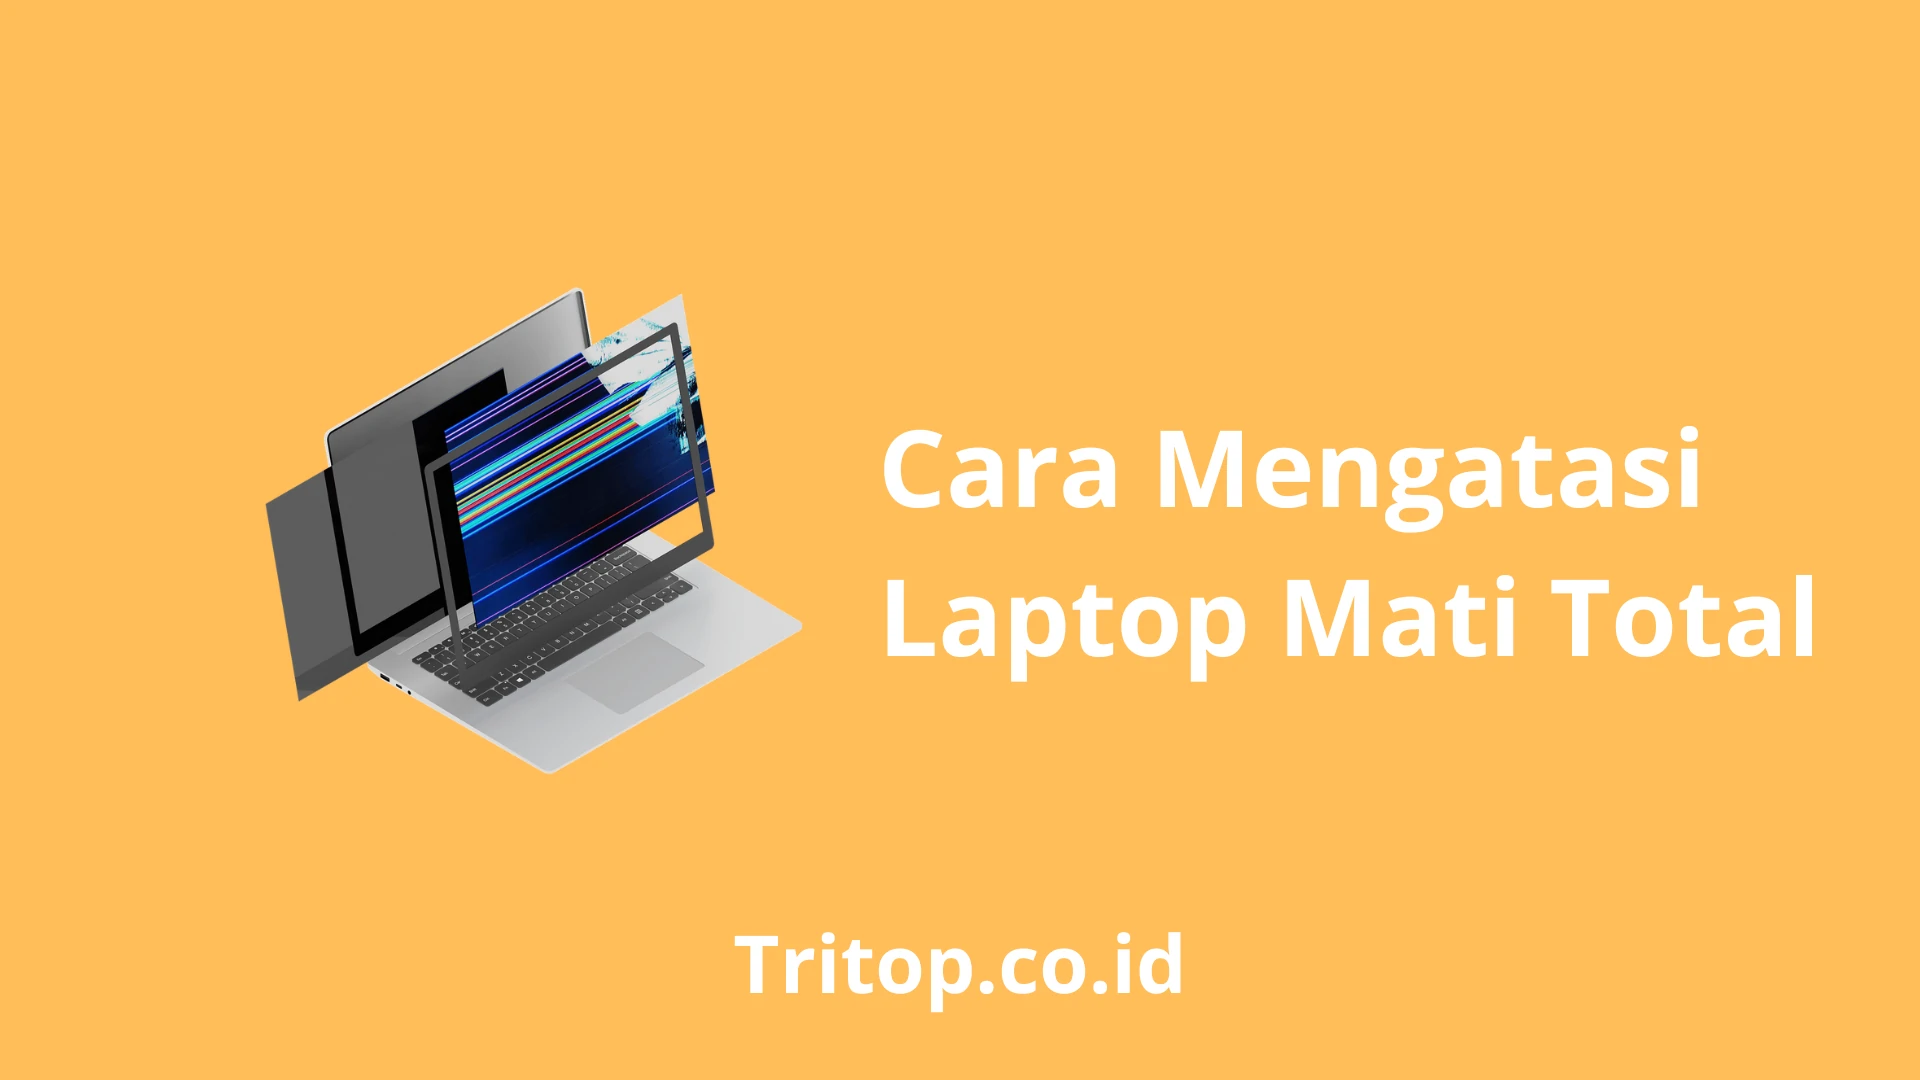 Cara Mengatasi Laptop Mati Total Tritop.co.id